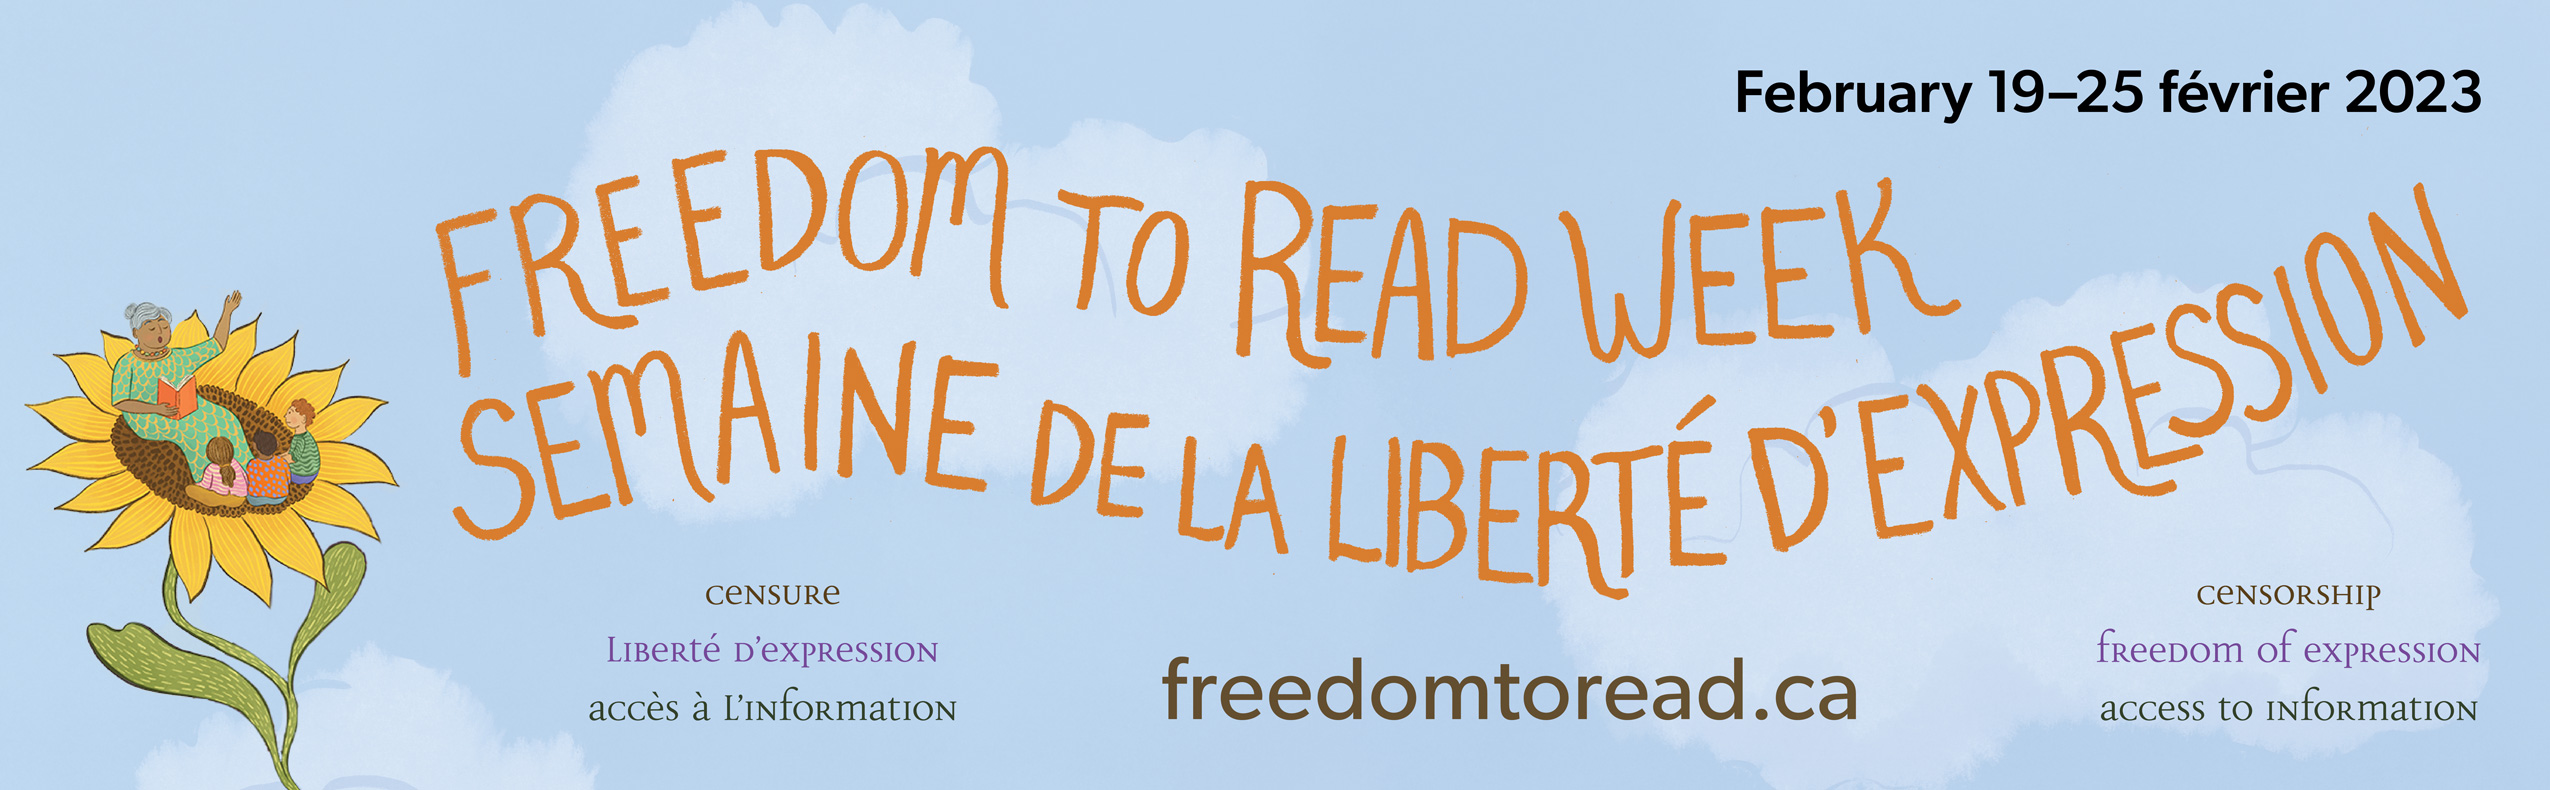 Freedom to Read Week, February 19-25, 2023